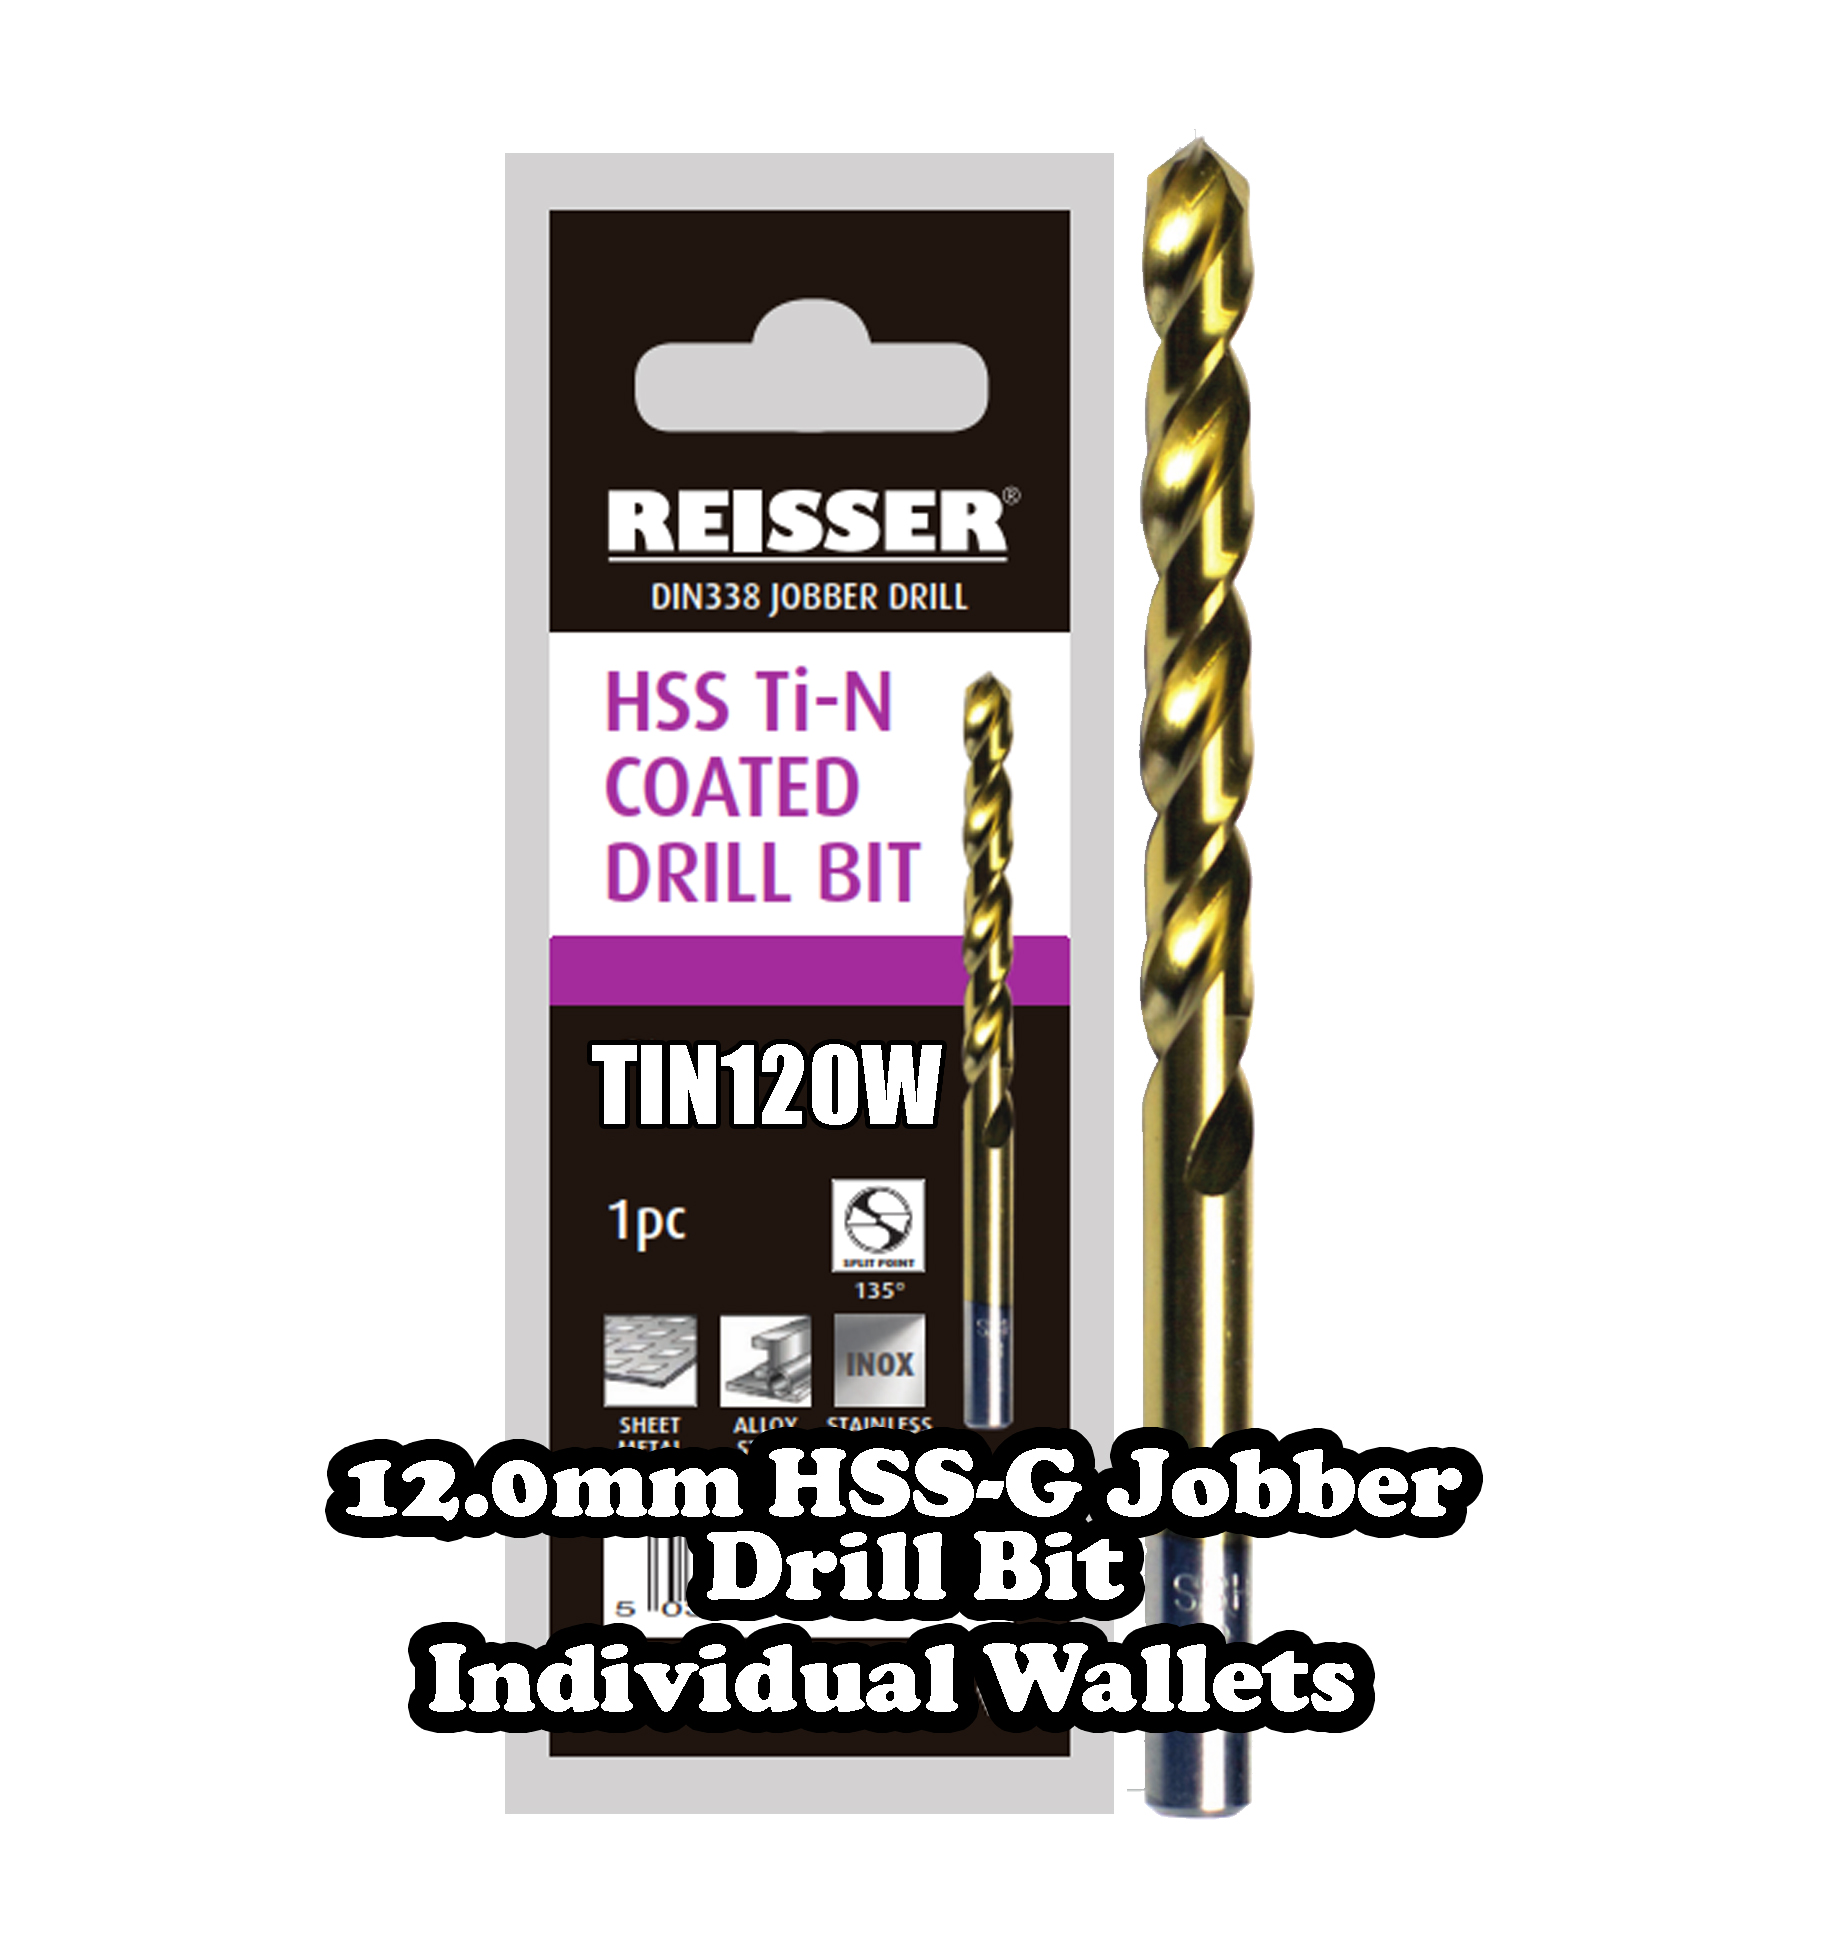 12.0mm HSS Jobber Drill Bit (SINGLE WALLET)